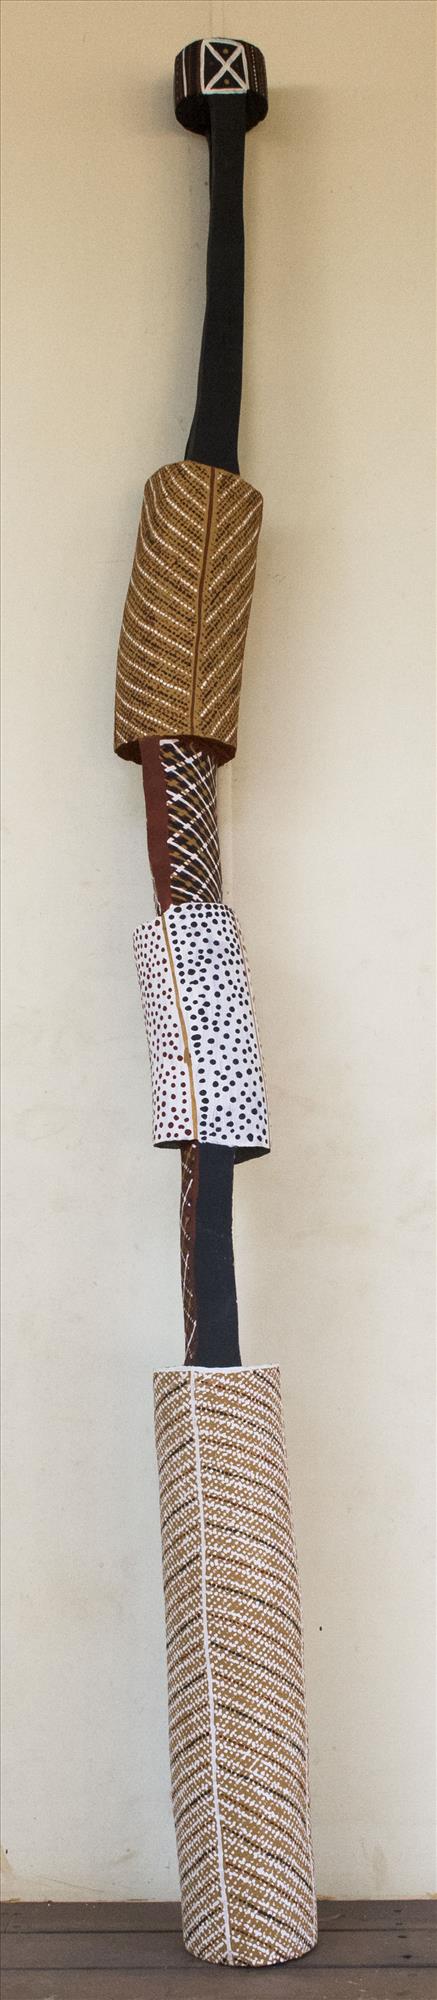 Tutini (Pukumani Pole) - Ironwood Carving - Janice Murray Pungautiji